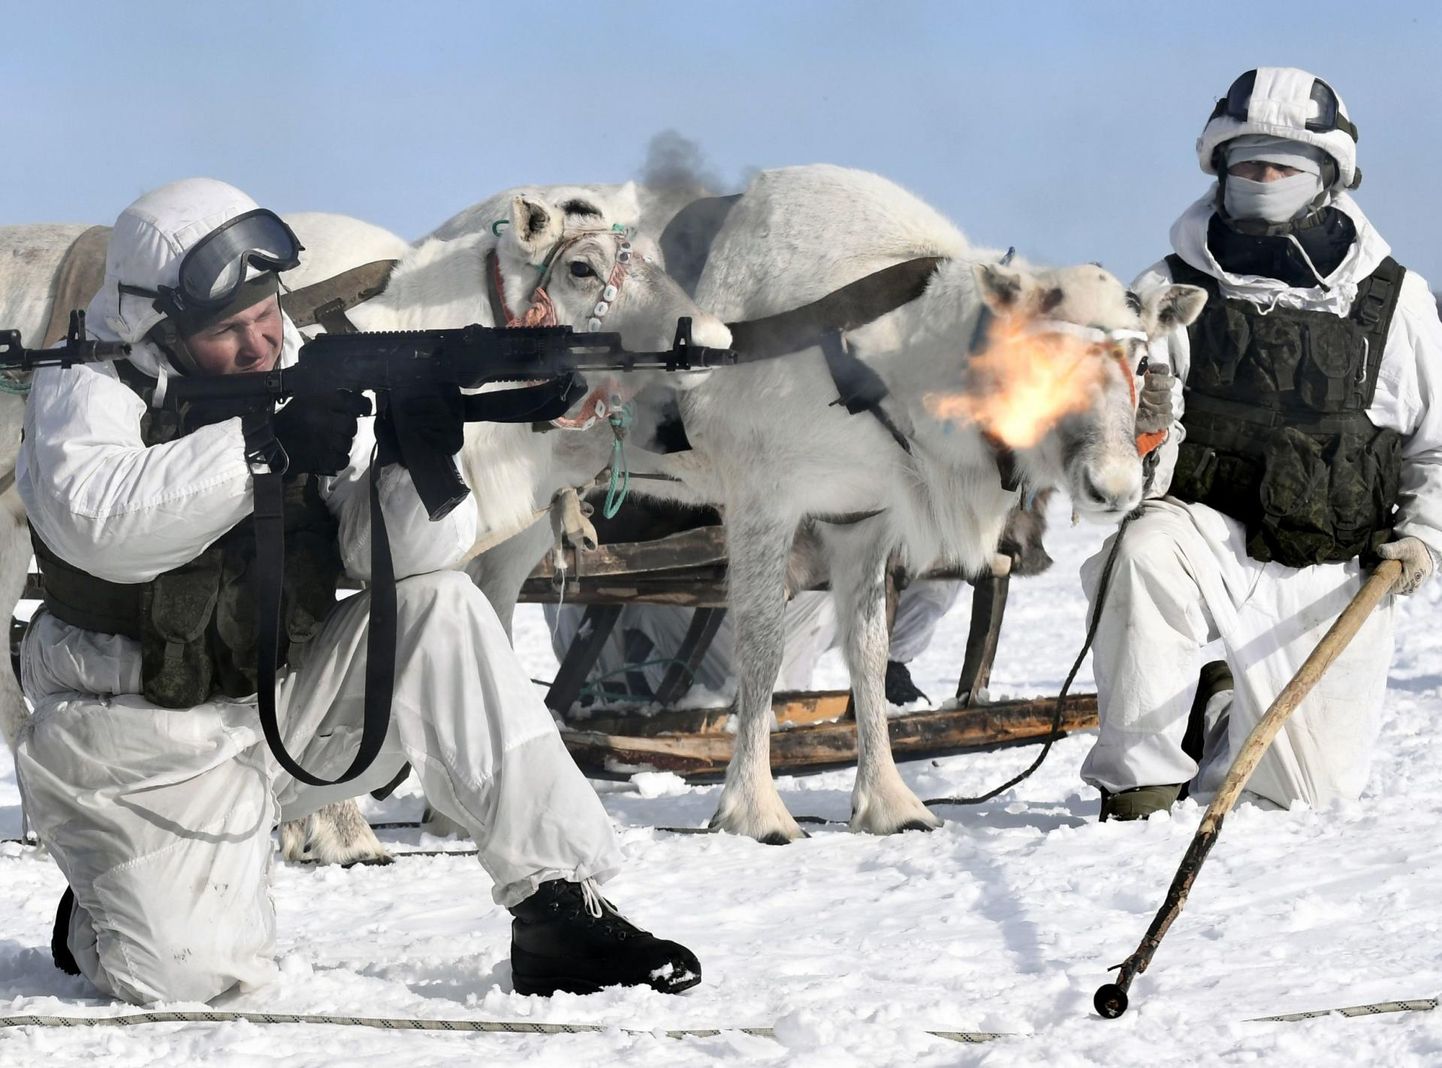 Venemaa sõdurid märtsis Murmanski oblastis Lovozeros õppustel harjutamas tegutsemist arktilises kliimas. 